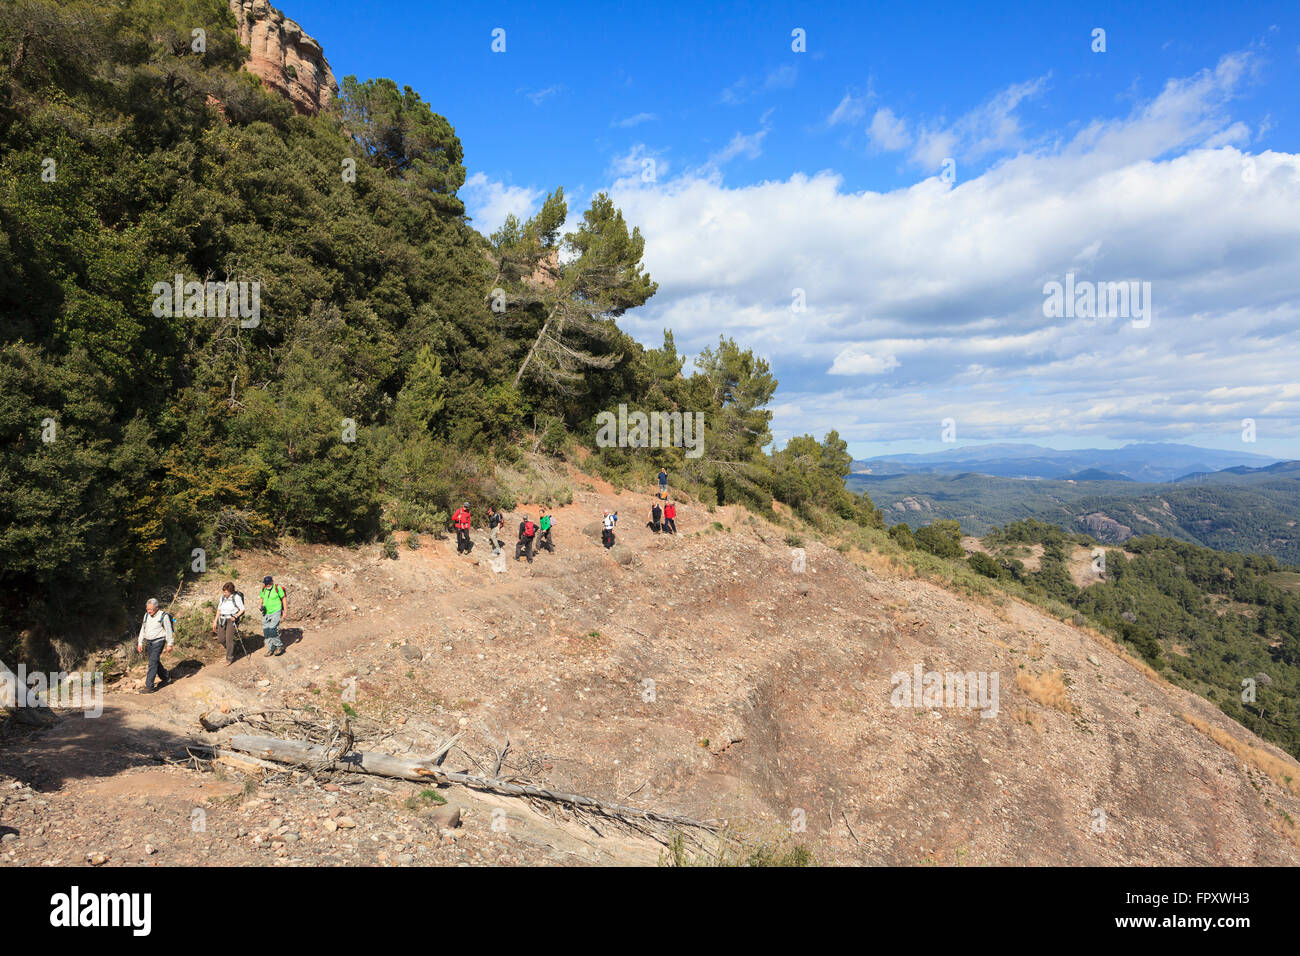 Gruppe von Wanderern zu Fuß. Sant Llorenc del Munt ich Naturpark Serra de l'Obac. Provinz Barcelona. Katalonien. Spanien. Stockfoto